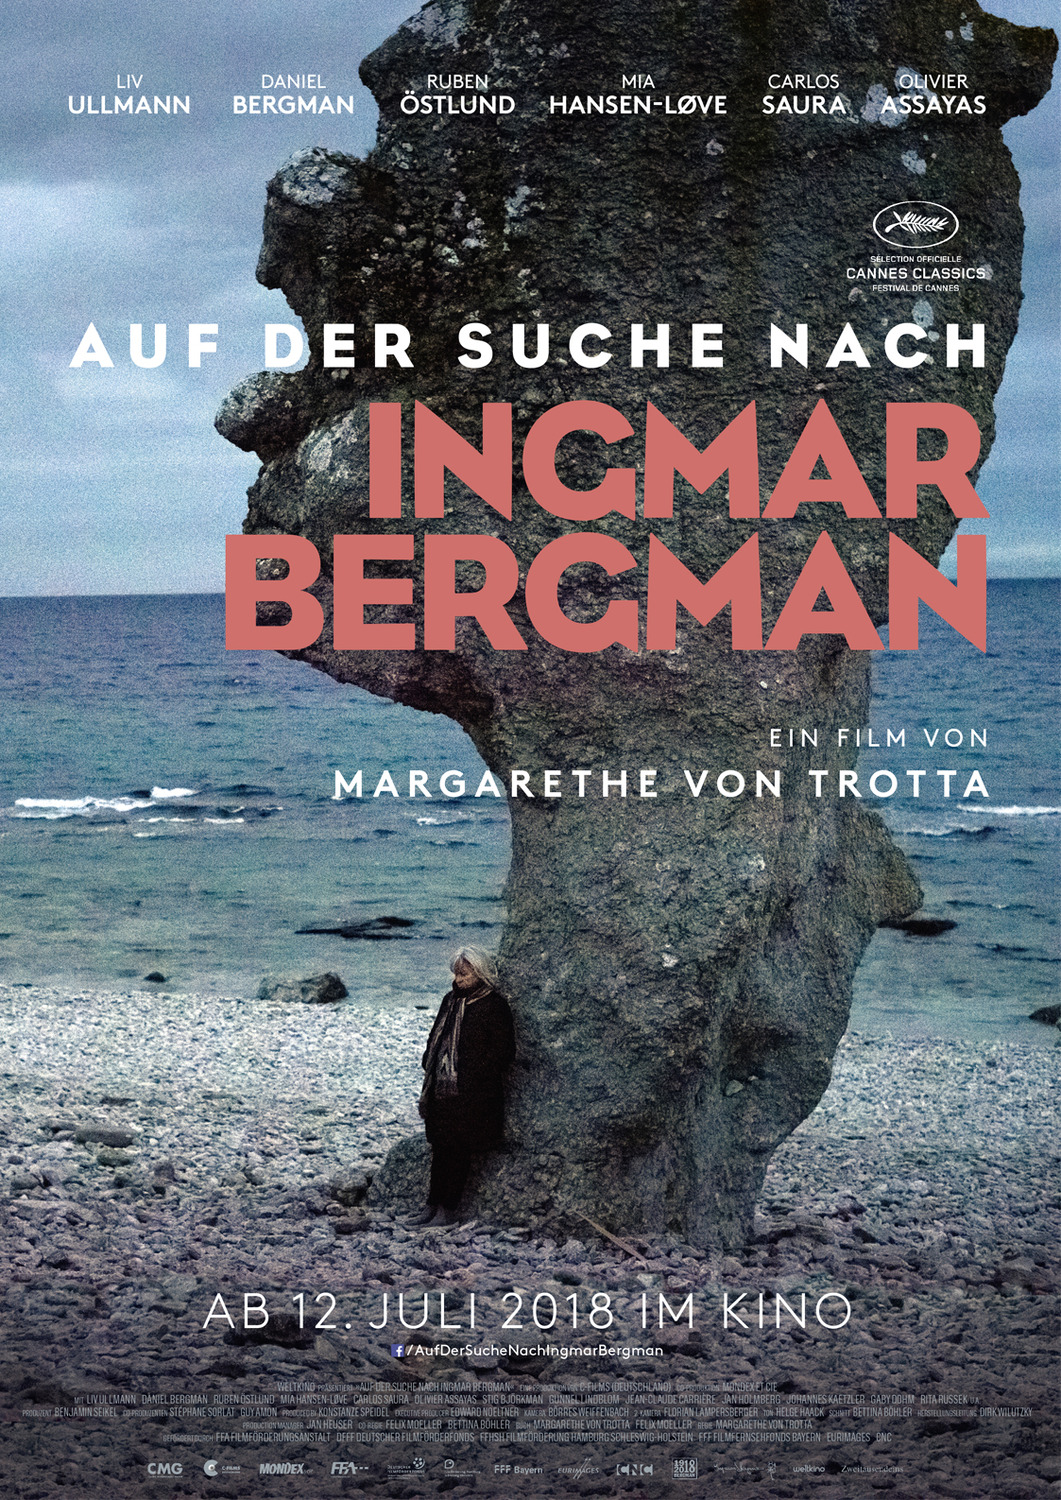 Extra Large Movie Poster Image for Auf der Suche nach Ingmar Bergman (#1 of 3)